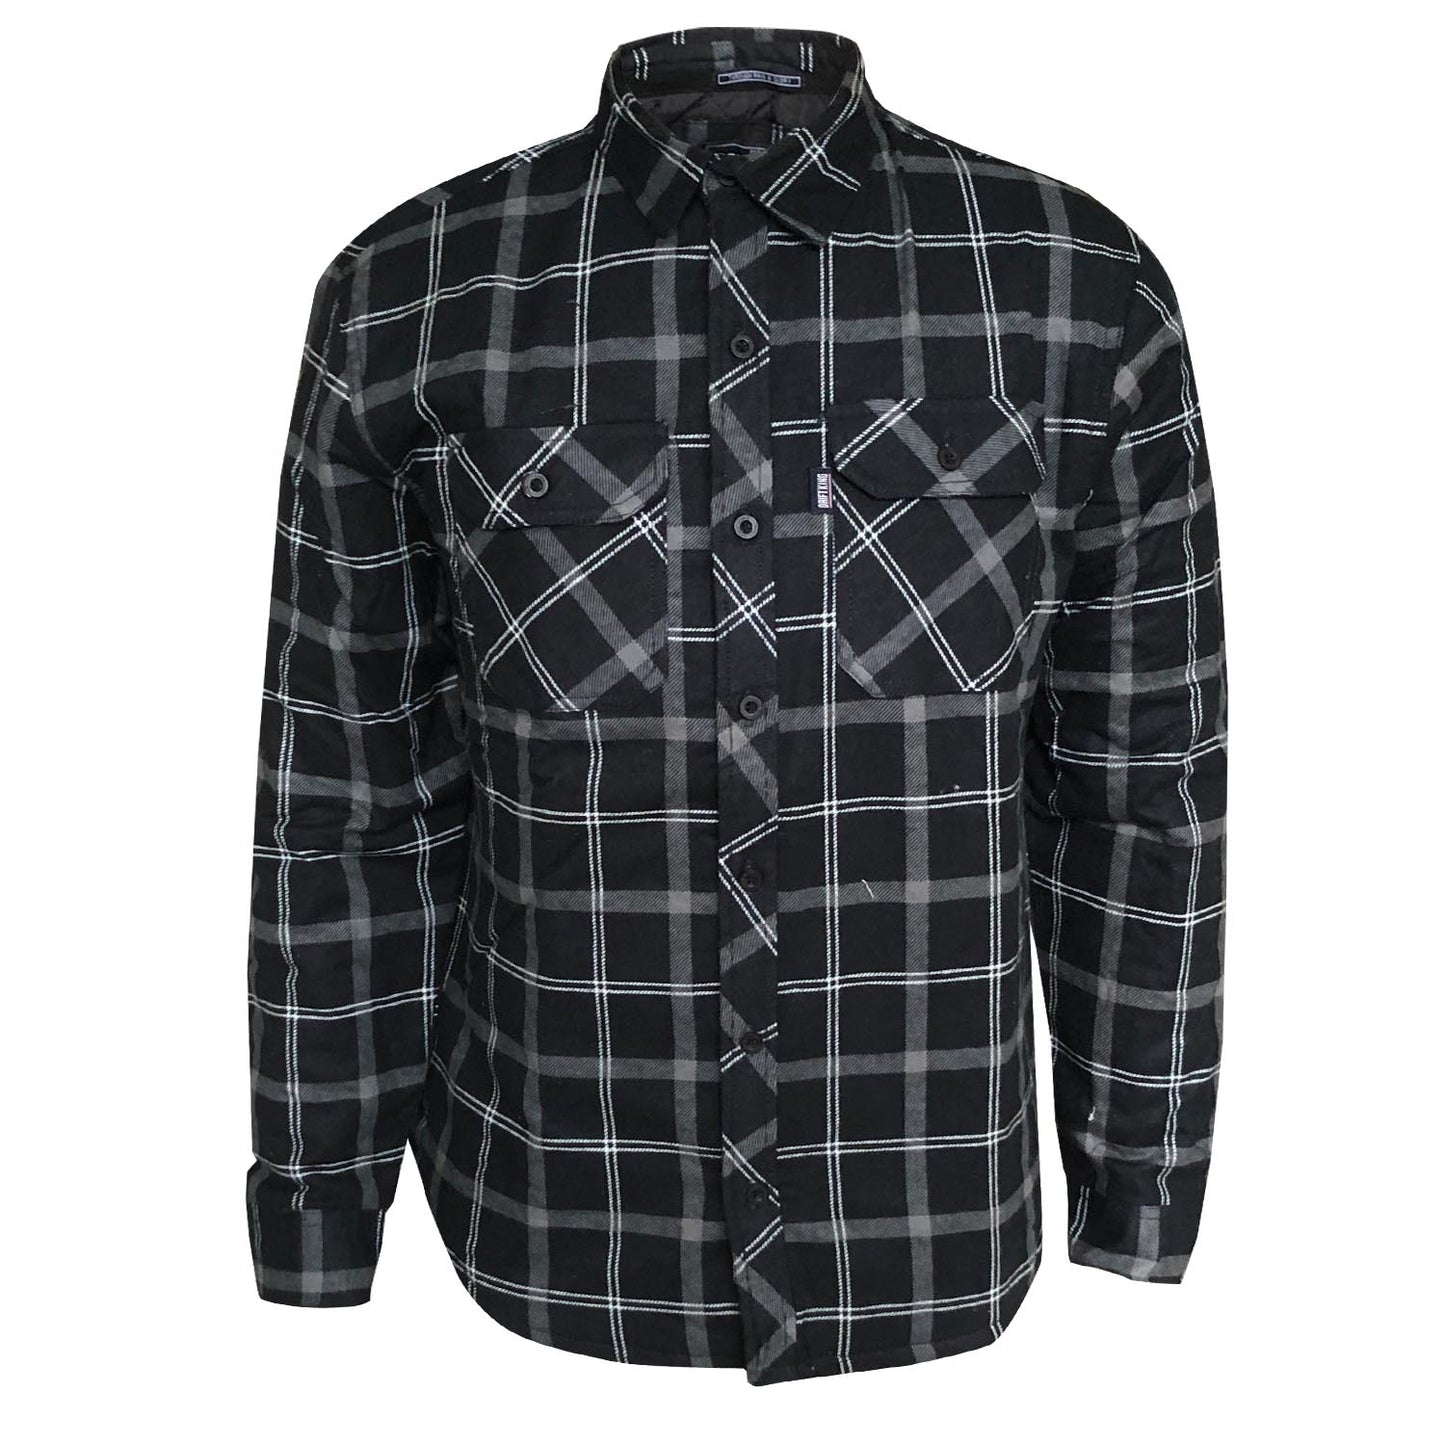 Drift King - Quilted Long Sleeve Shirt AW19 - LabelledUp.com